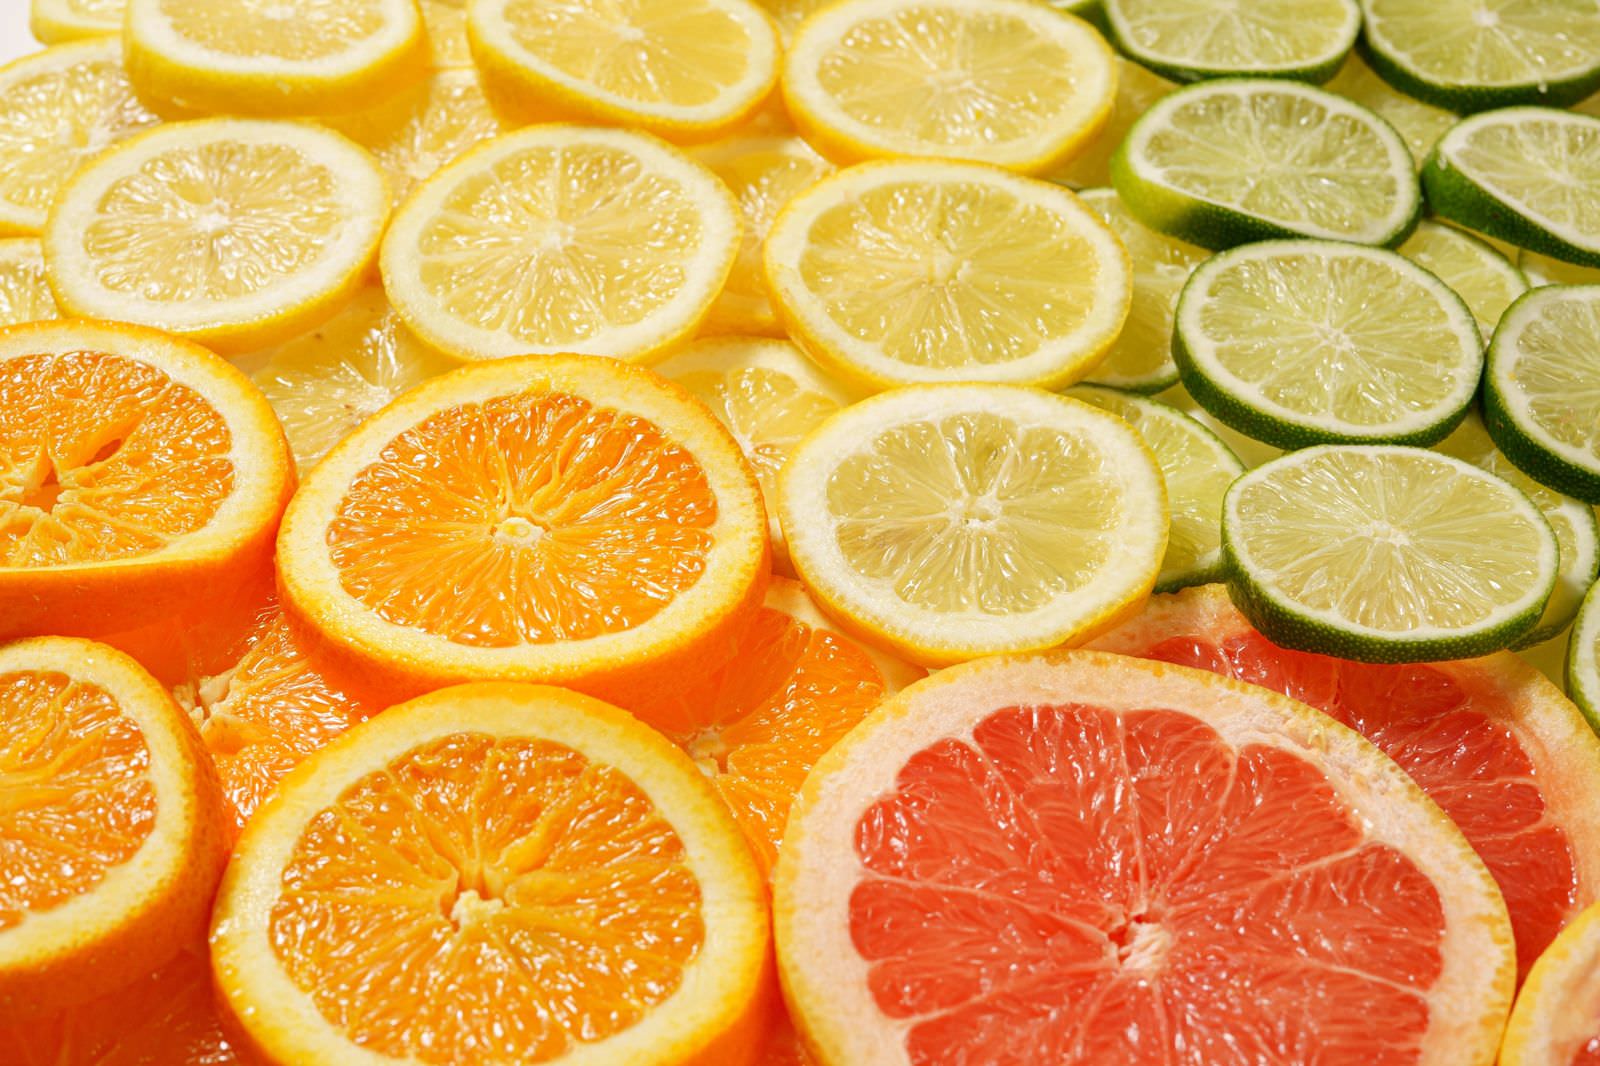 「柑橘類のカットフルーツ | フリー素材のぱくたそ」の写真